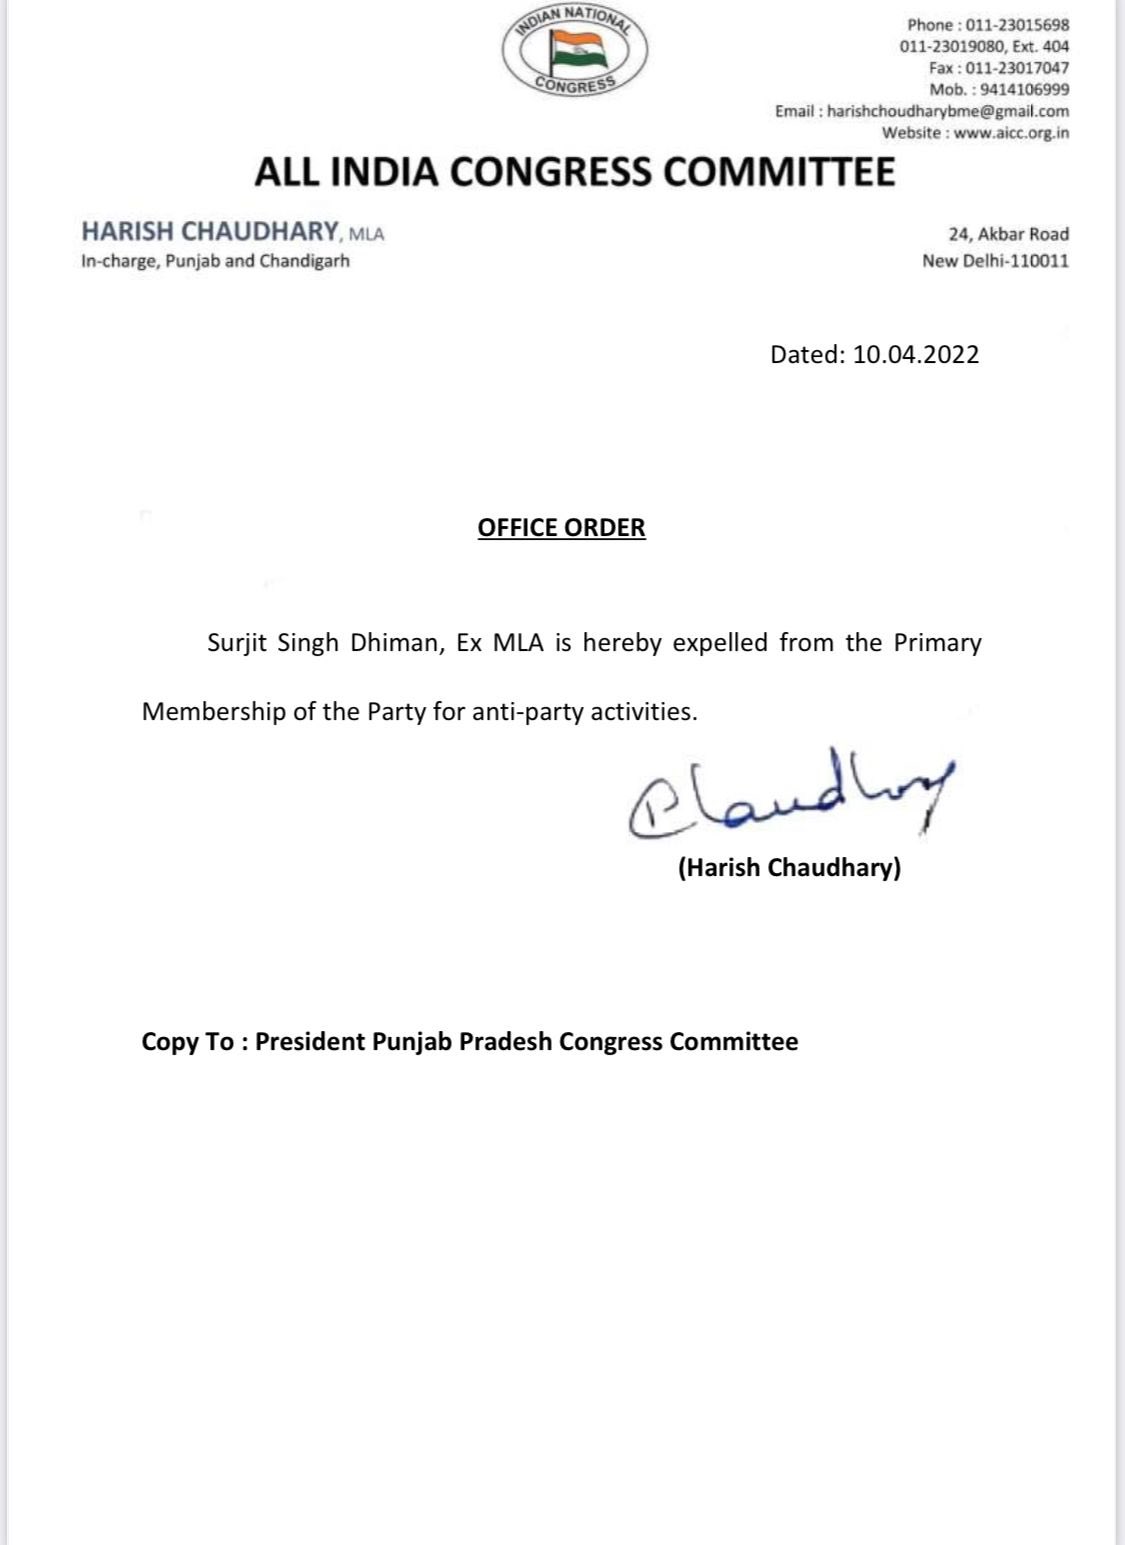 PunjabCongressCrisis: Congress expelled former MLA Surjit Singh Dhiman